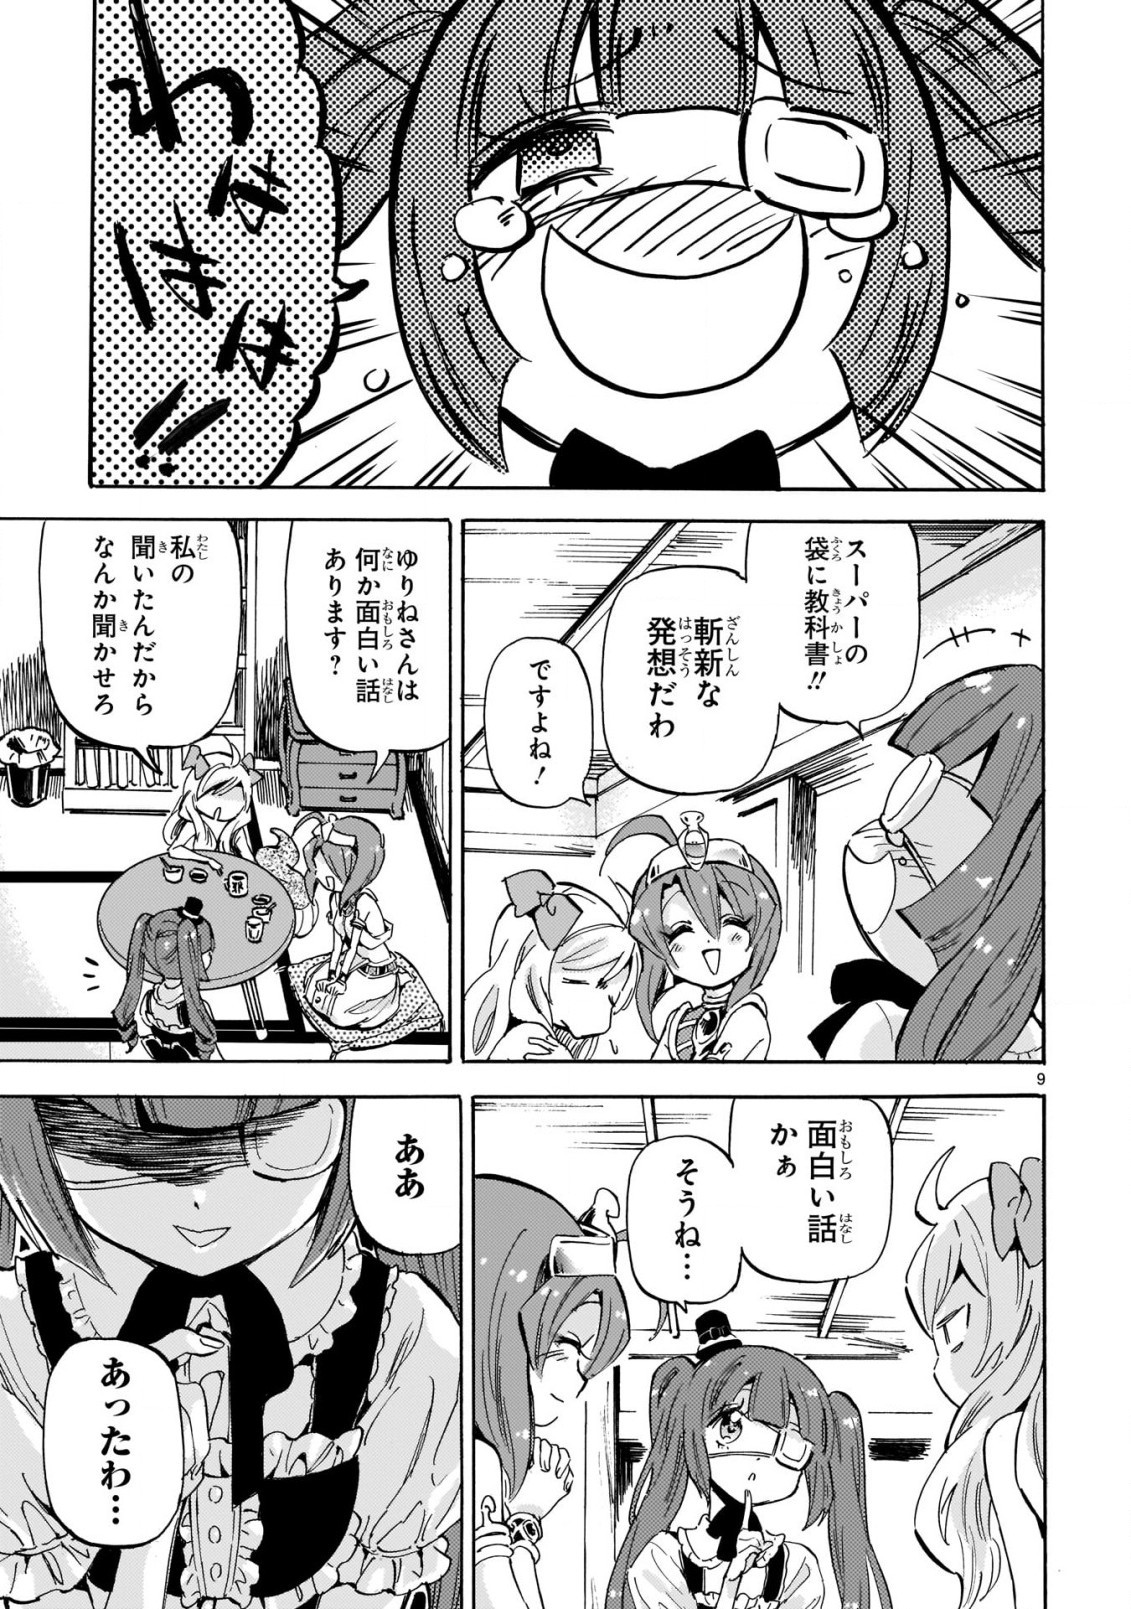 Jashin-chan Dropkick - Chapter 197 - Page 9